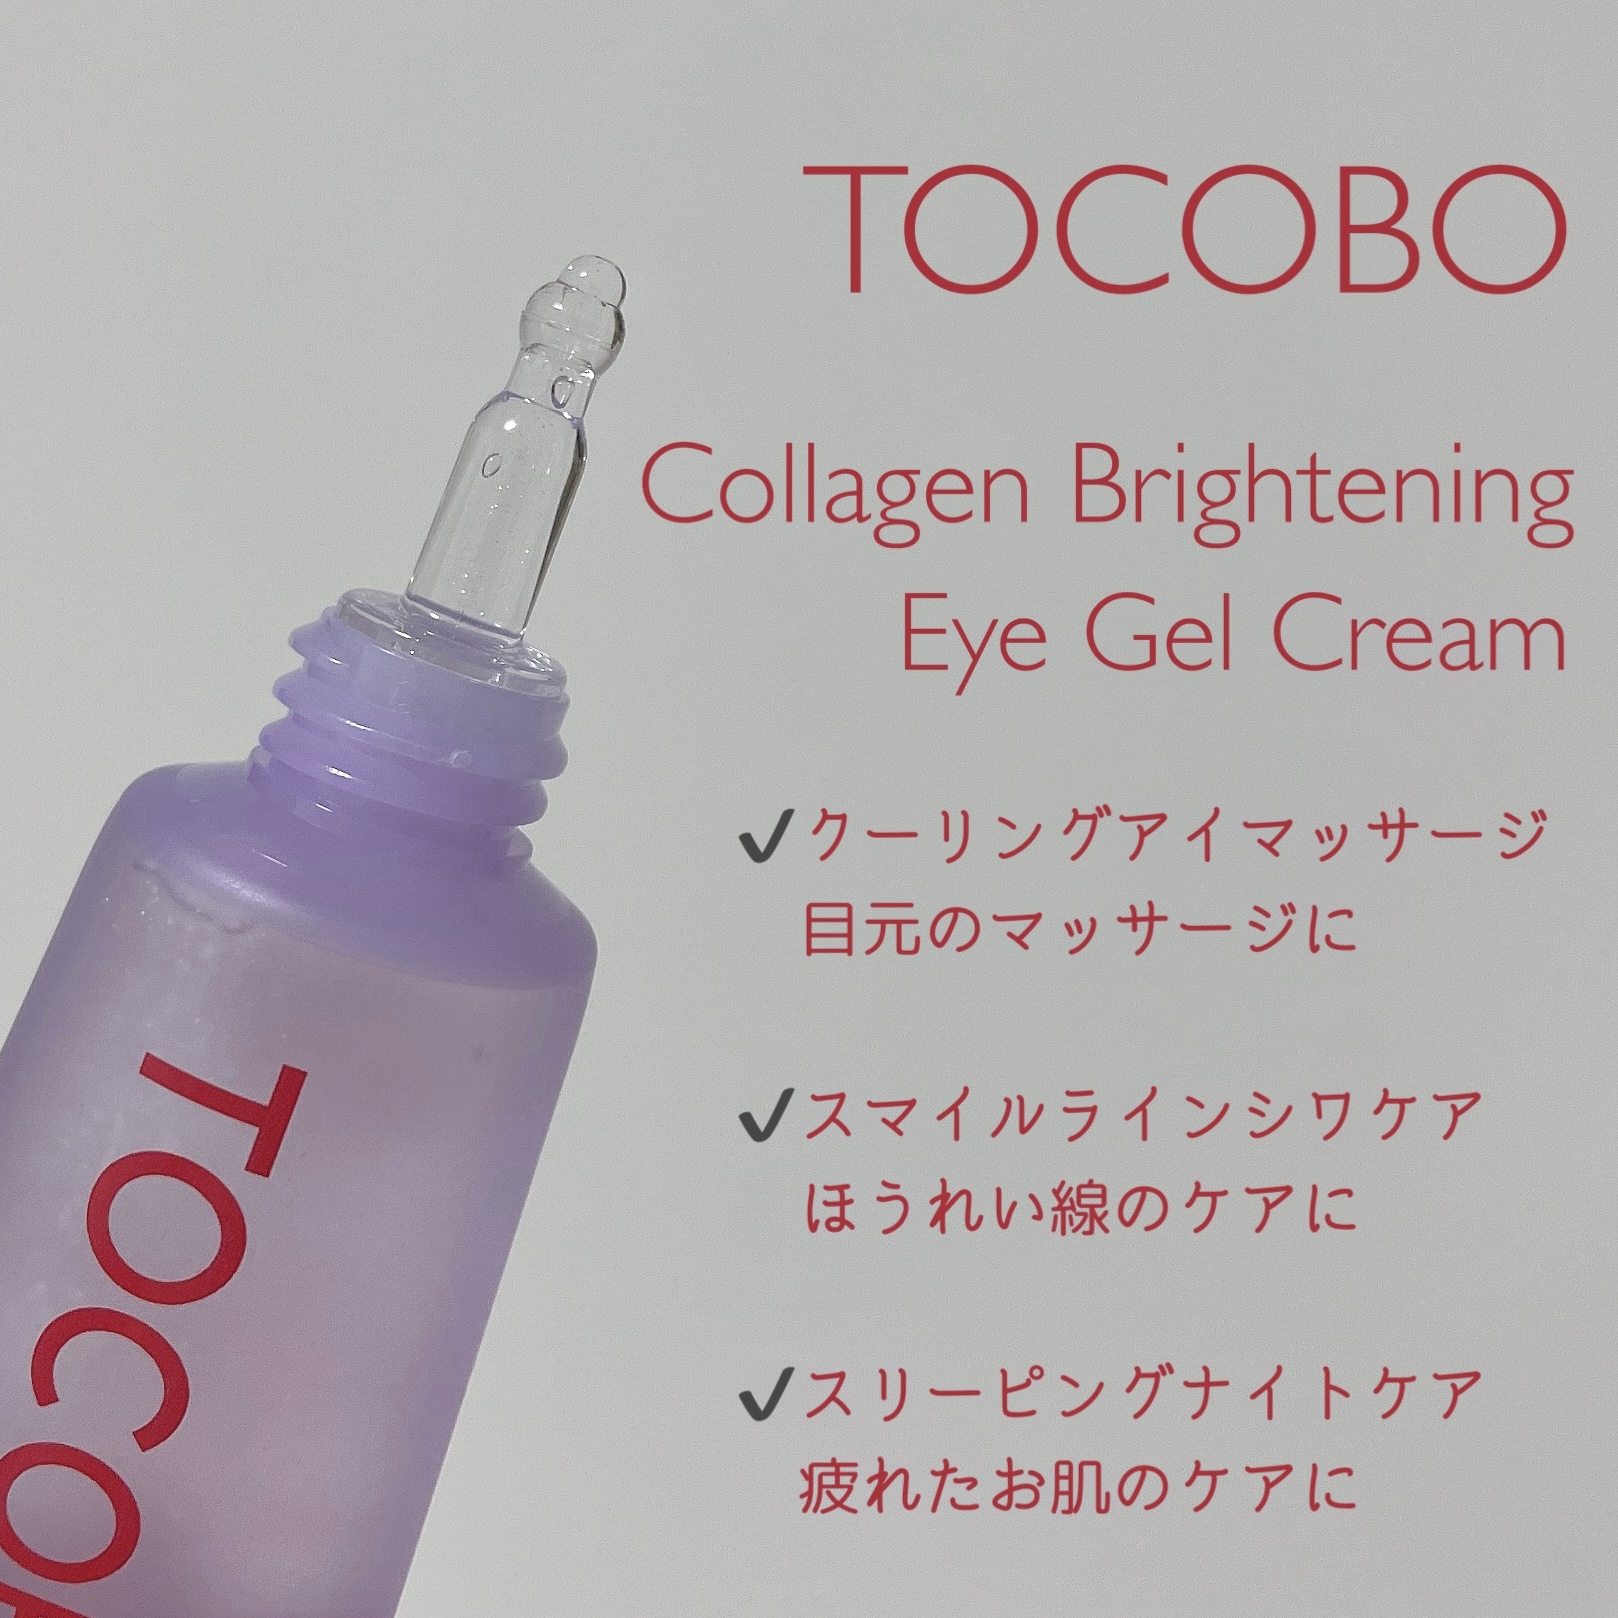 TOCOBO コラーゲンブライトニングアイジェルクリームを使ったもいさんのクチコミ画像2